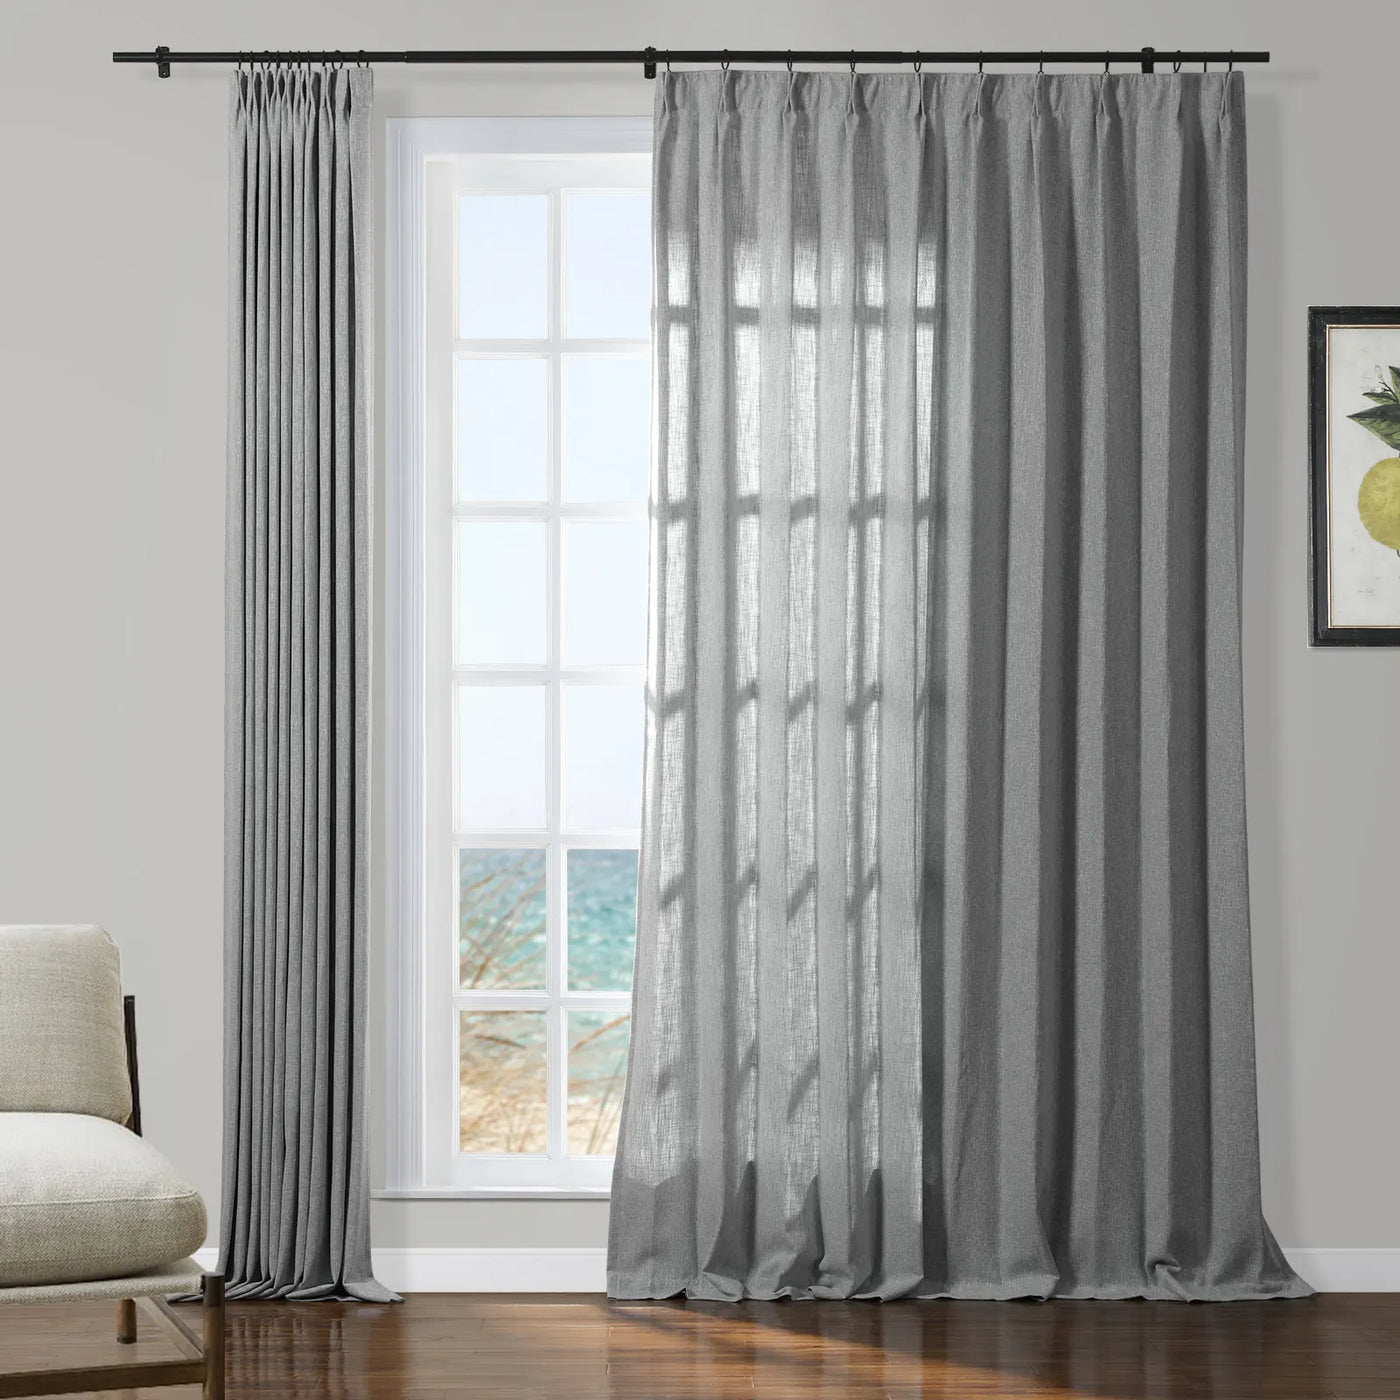 Sarai Textured Polyester Cotton Curtain Pleated